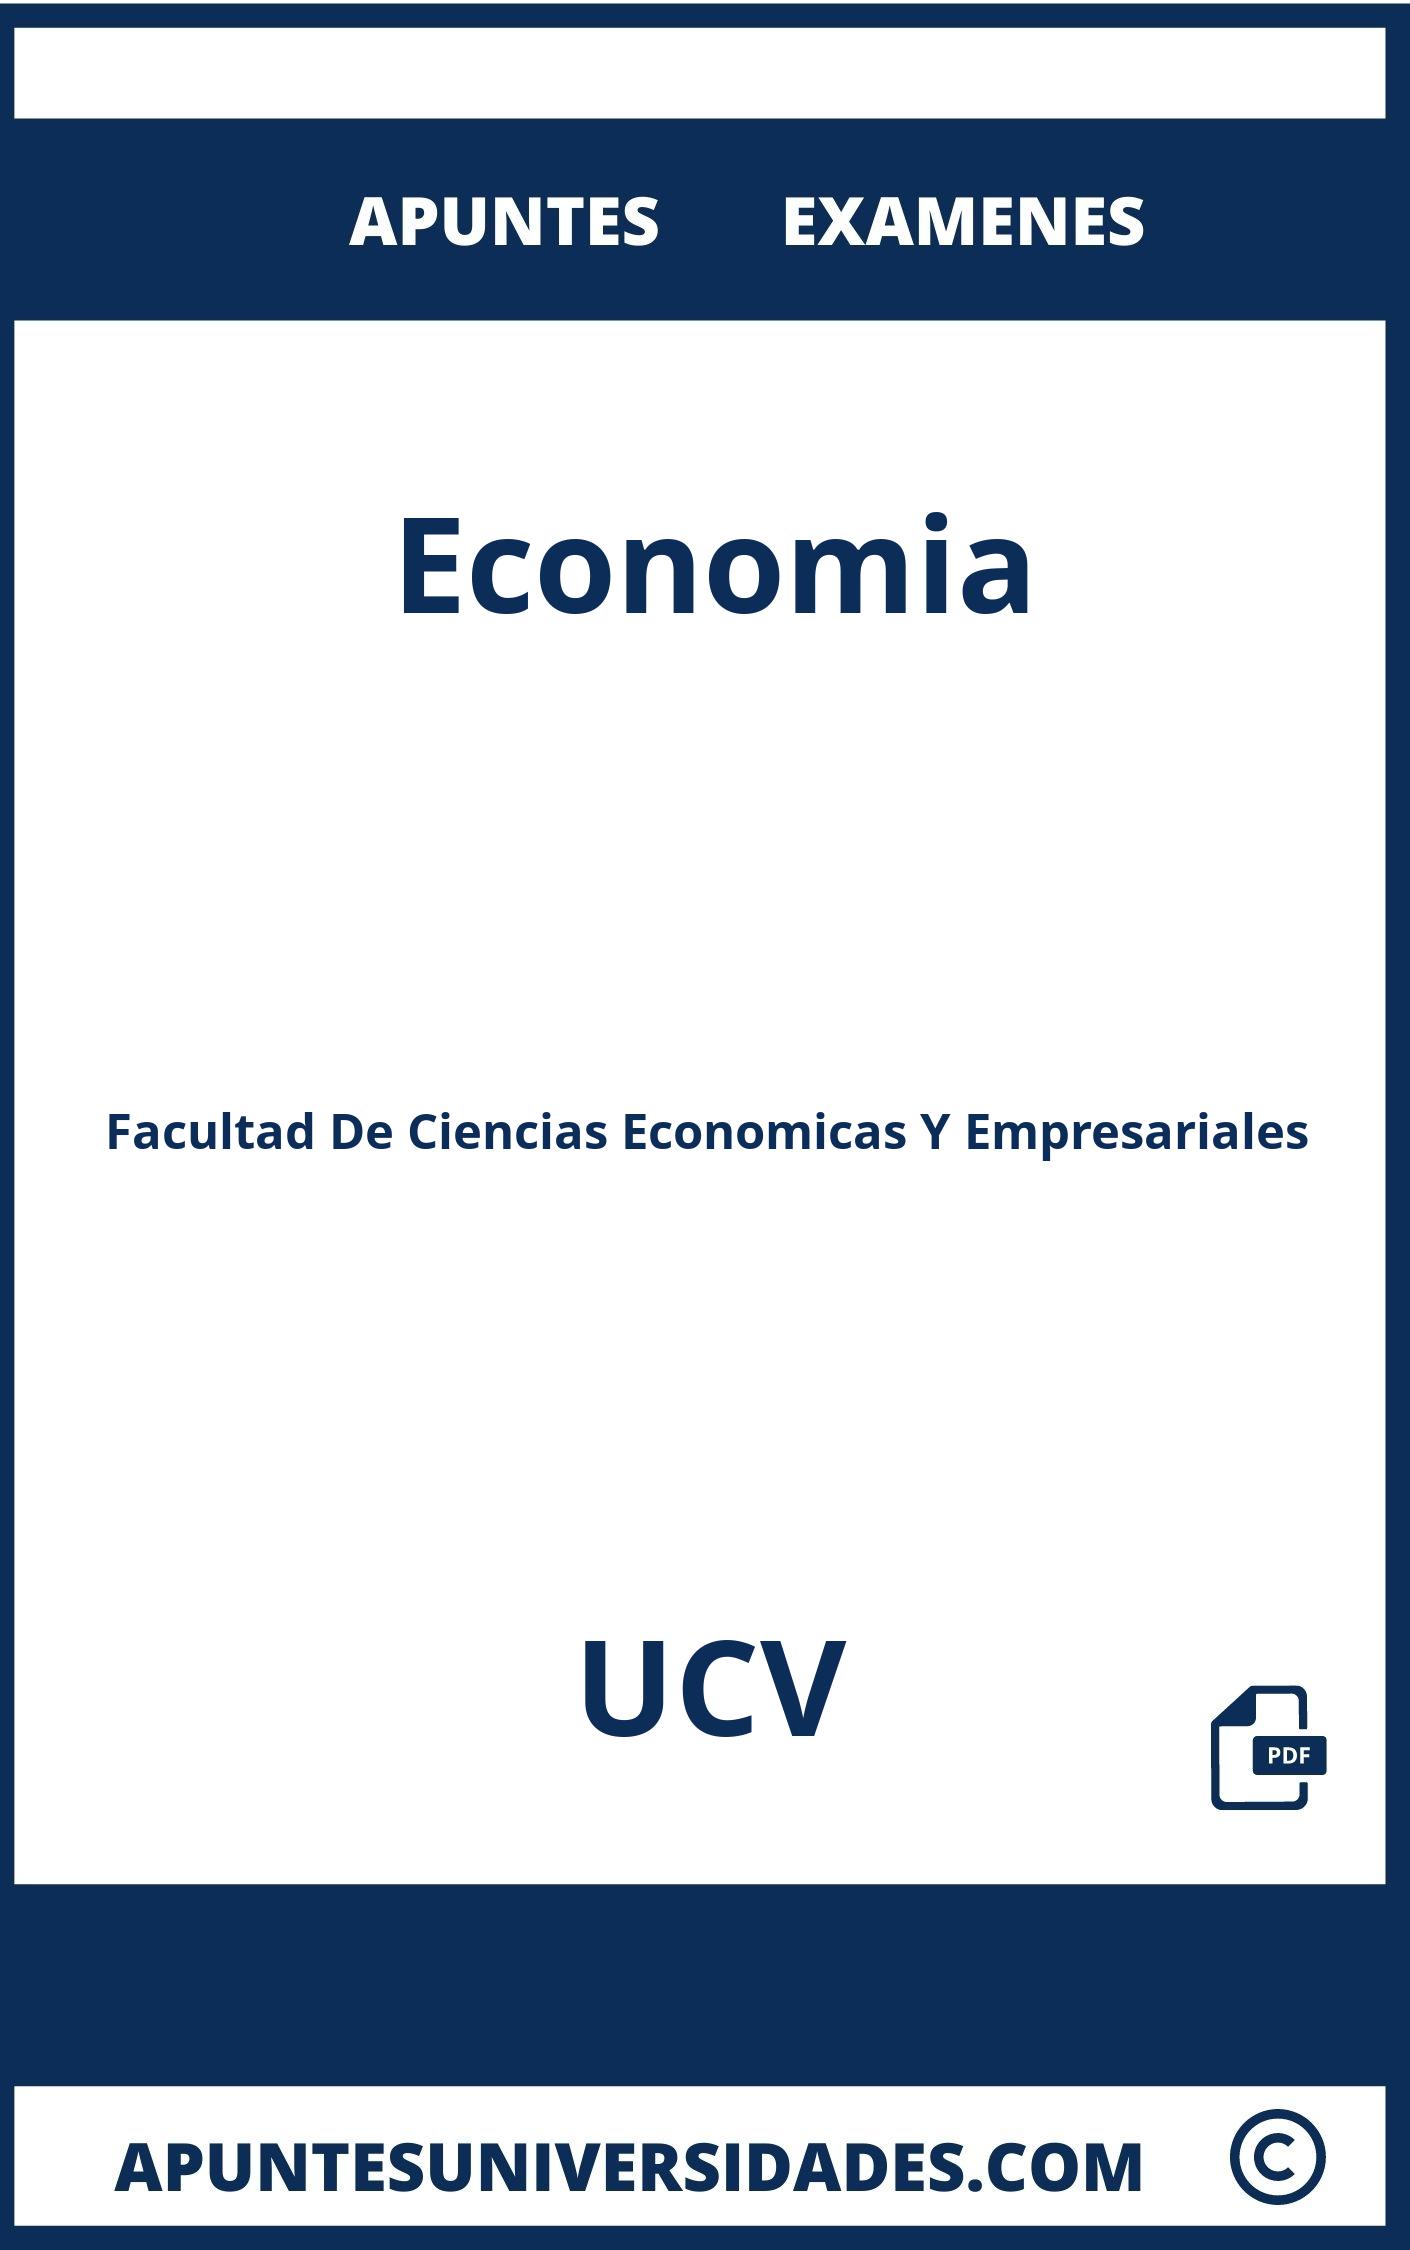 Examenes y Apuntes Economia UCV